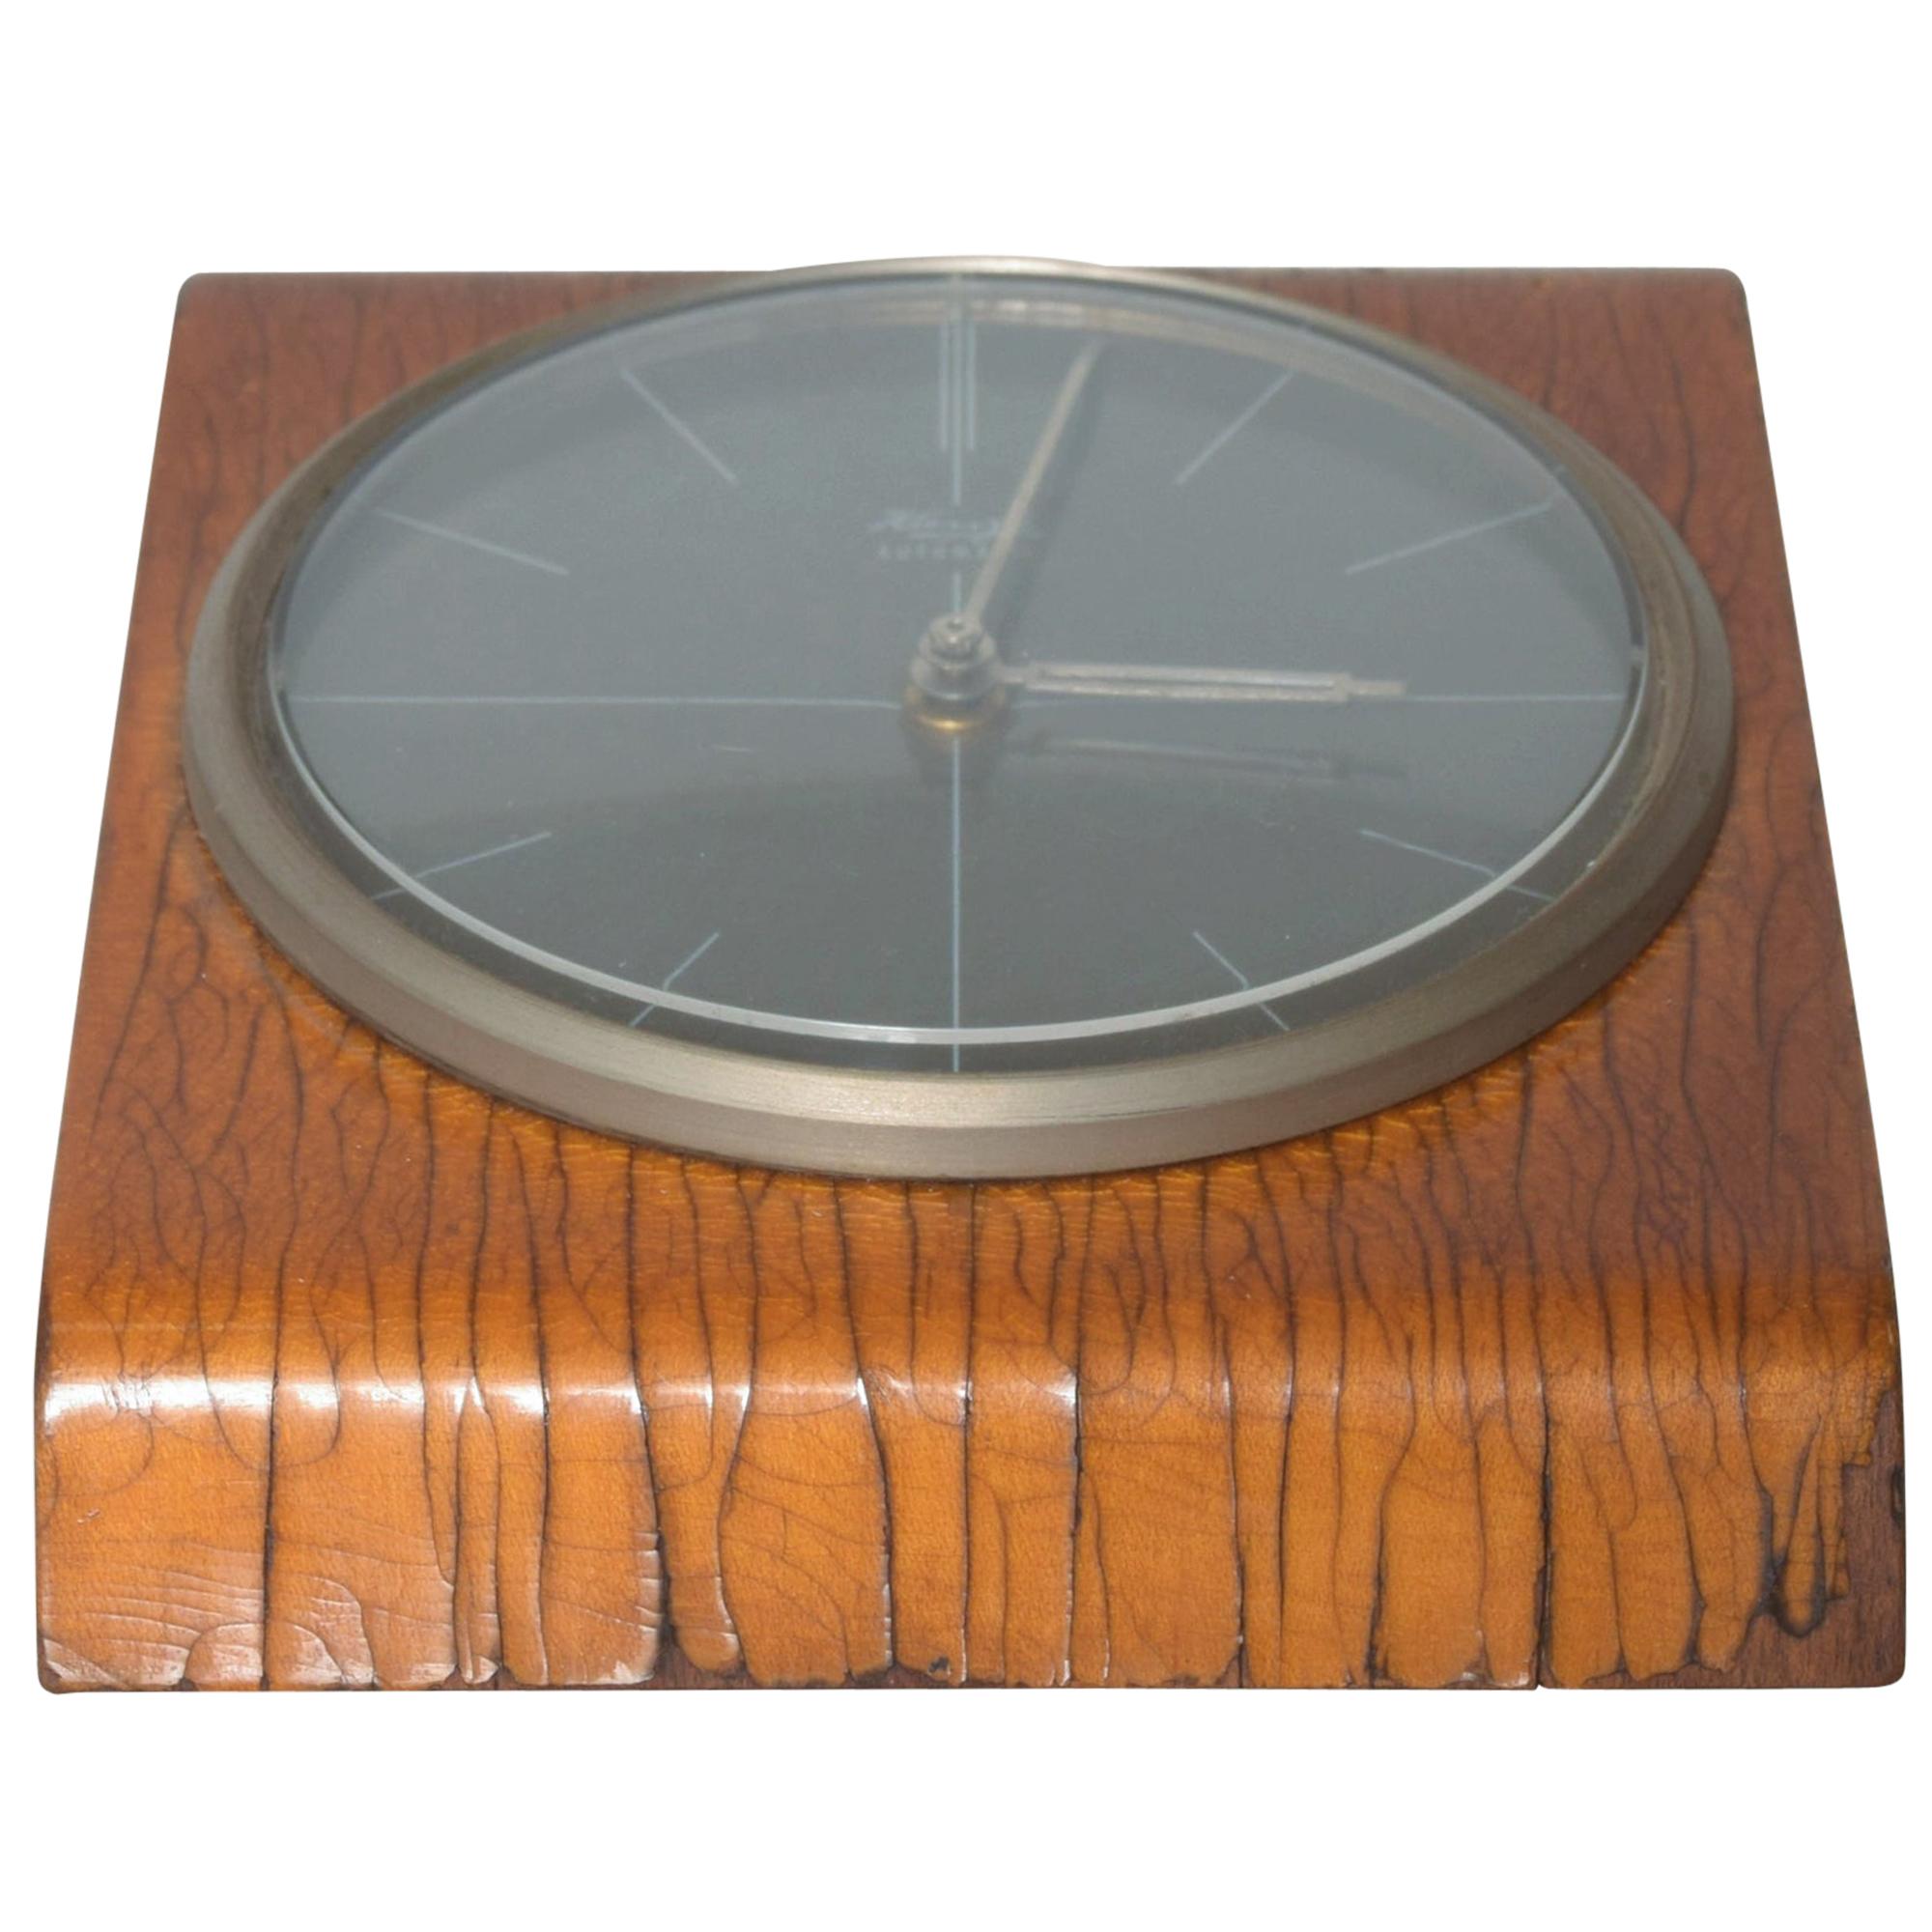 KIENZLE Modern Bentwood Desk Clock 1960s Germany